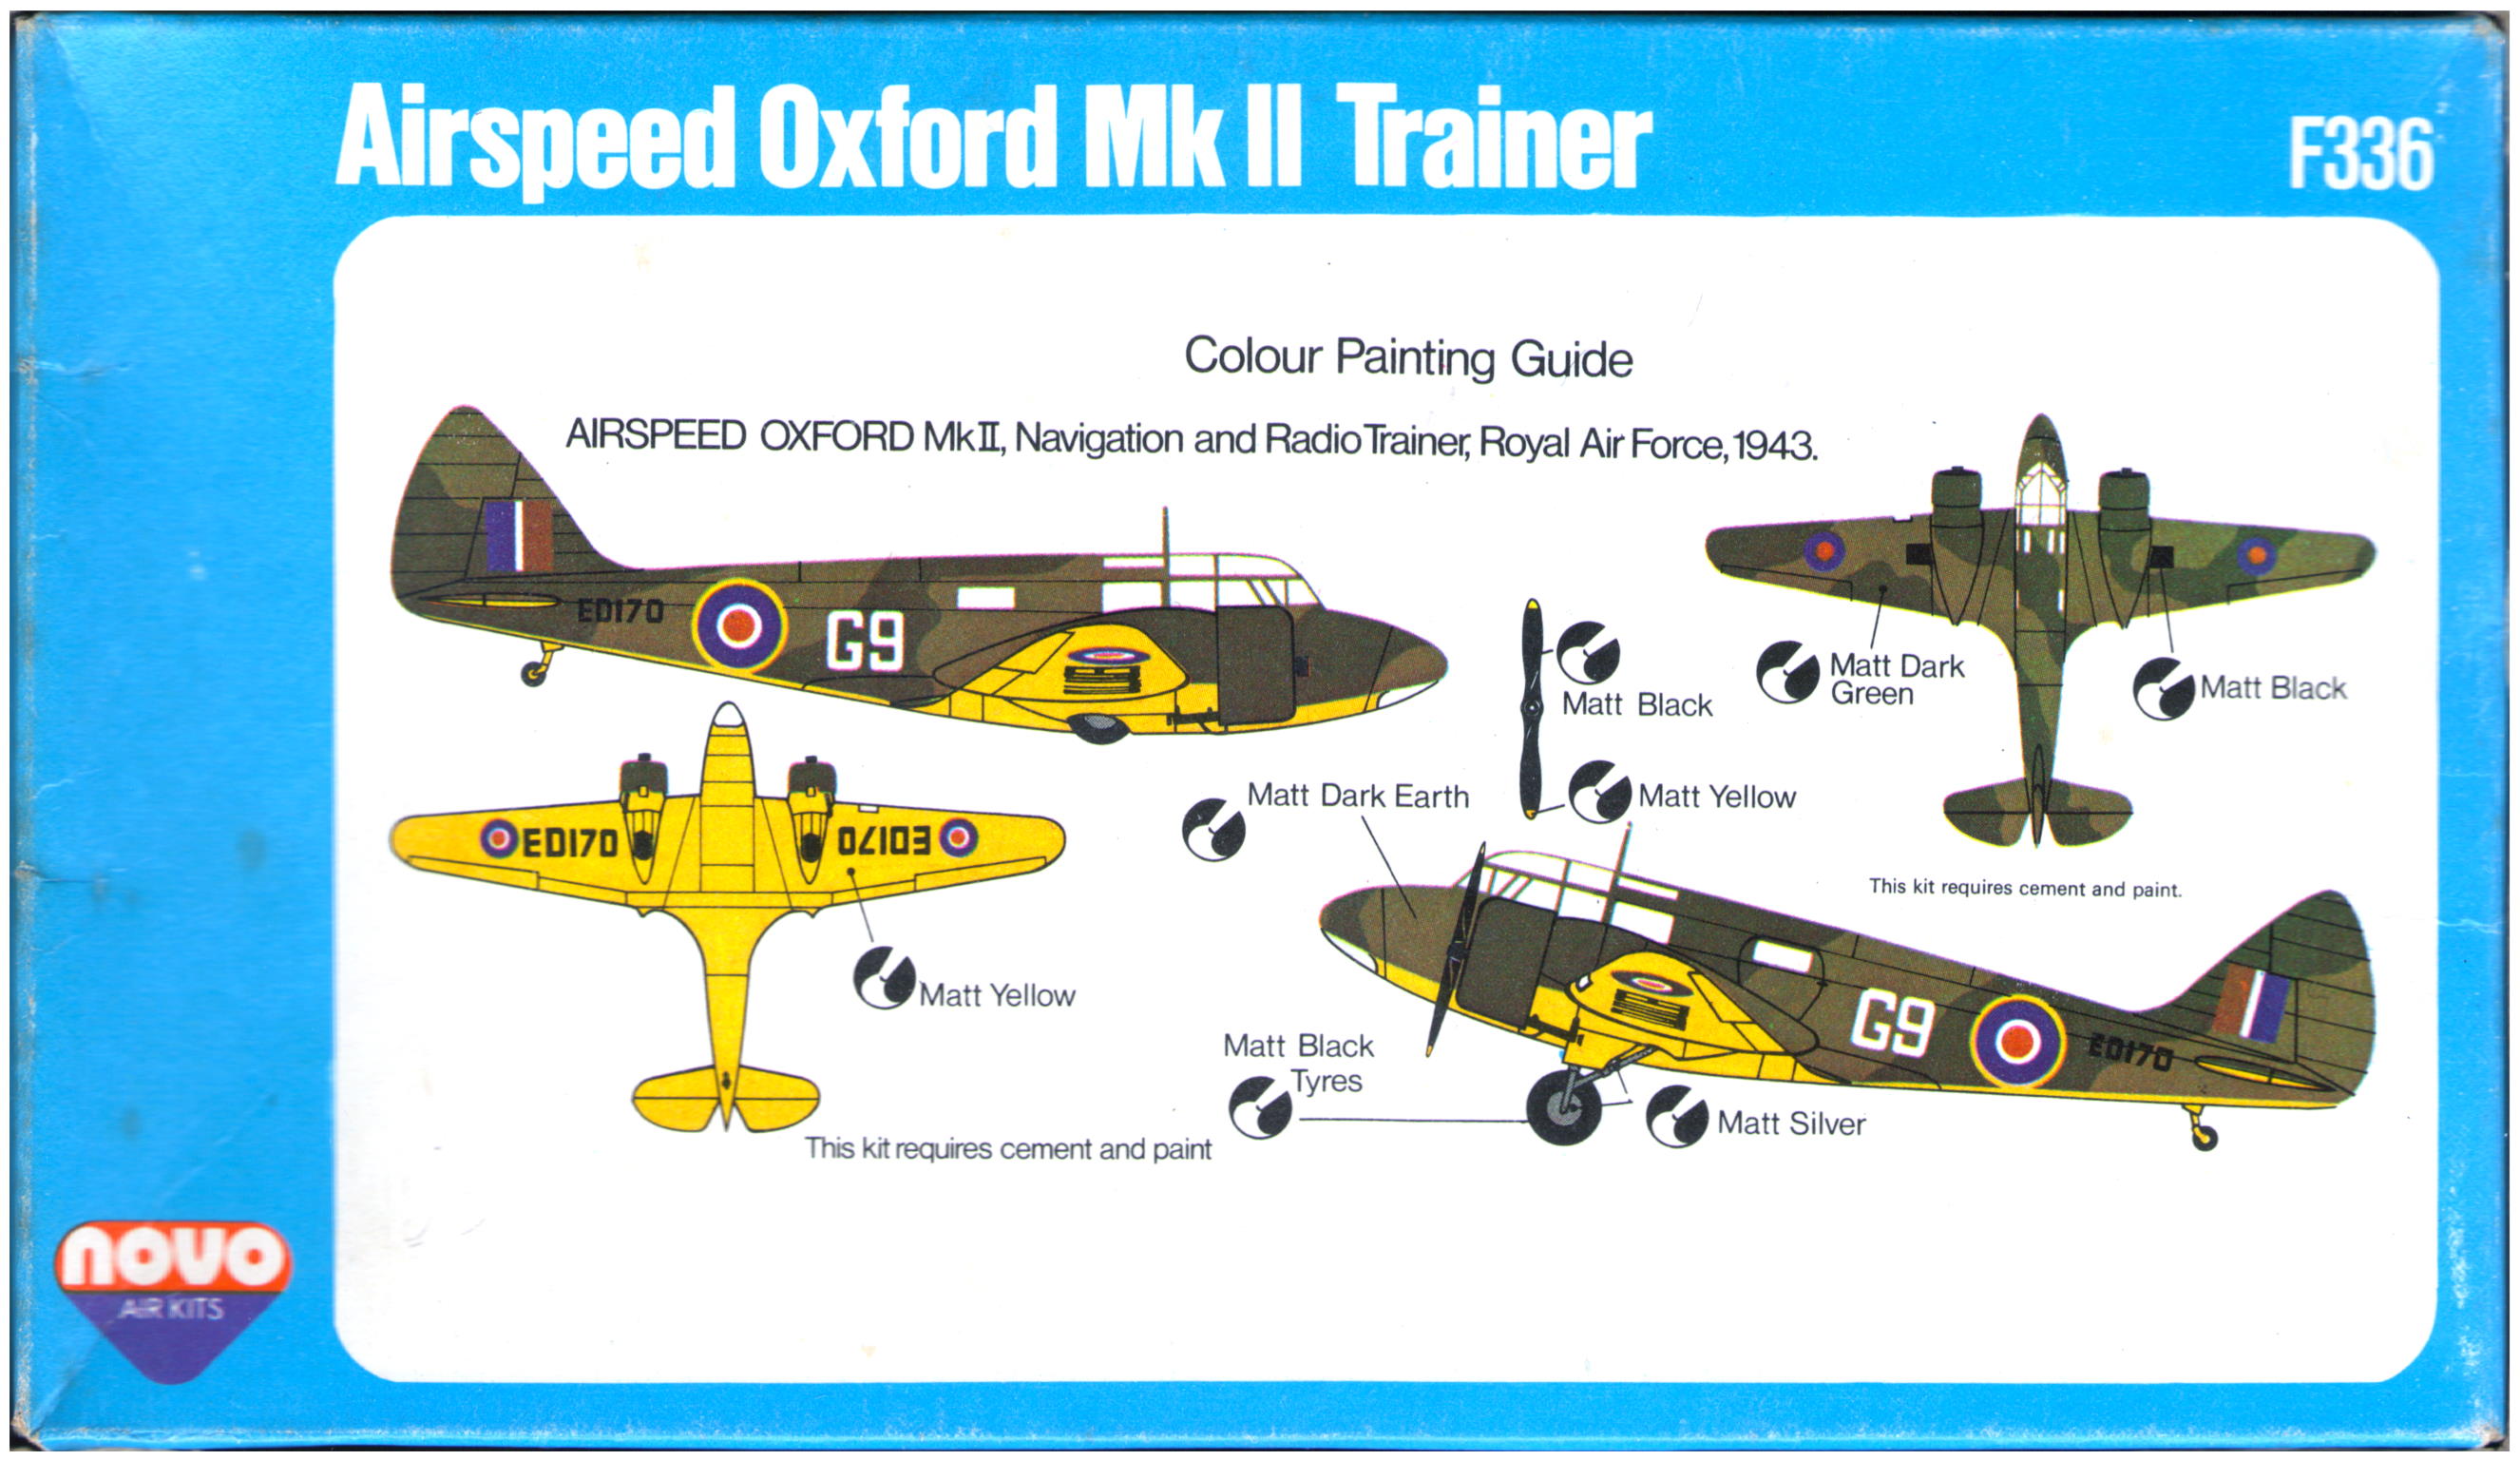 Гид по окраске и маркировке NOVO F336 Airspeed Oxford Mk.II Trainer, NOVO Toys Ltd, 1977